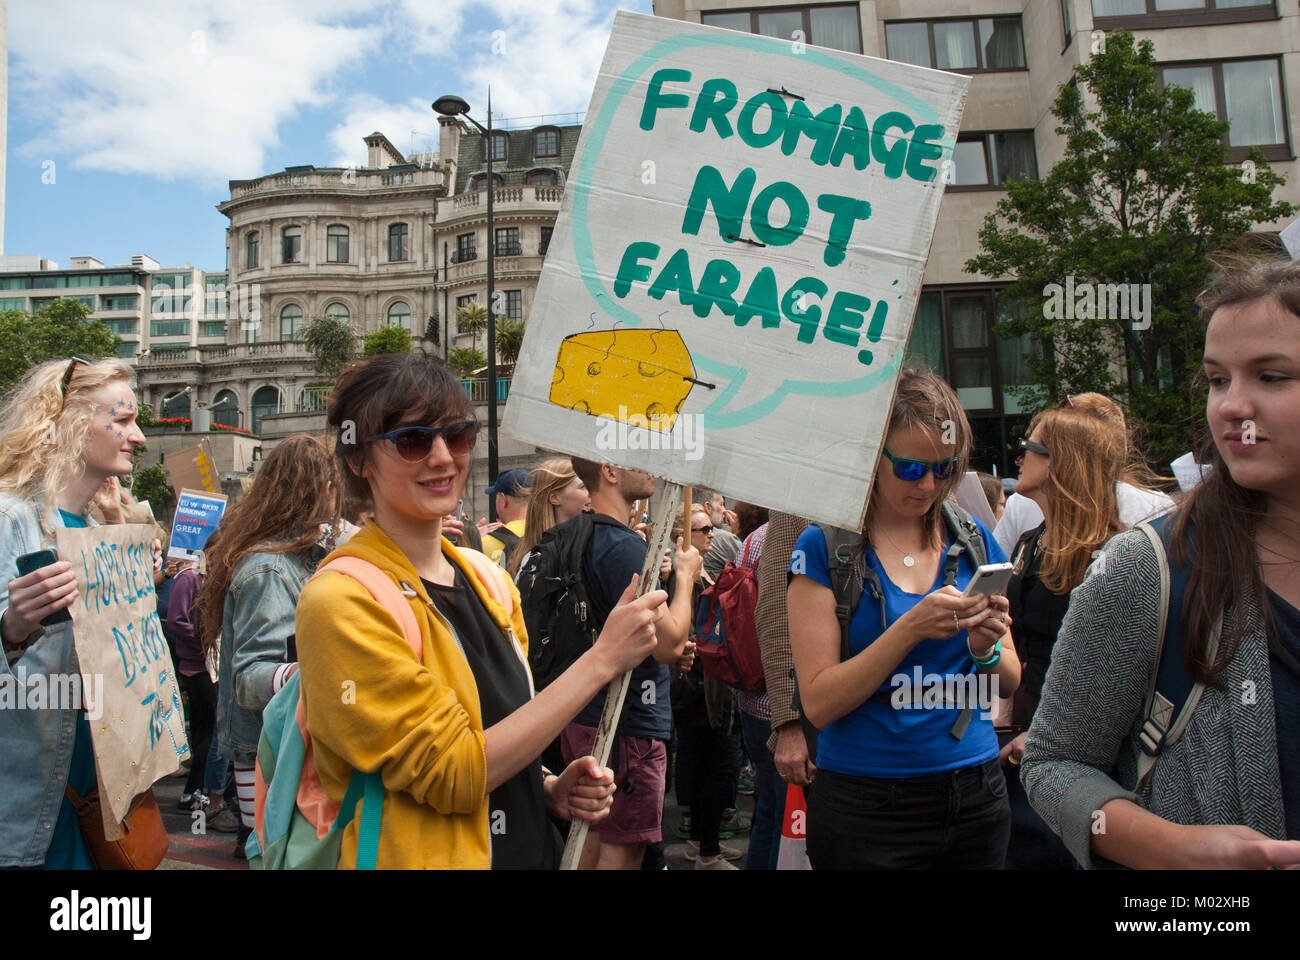 Demonstration gegen Brexit. Junge Frau, lächelnd, hält ein Plakat "Fromage nicht Farage' mit Abbildung: Käse, mit jungen Demonstranten surroundin Stockfoto